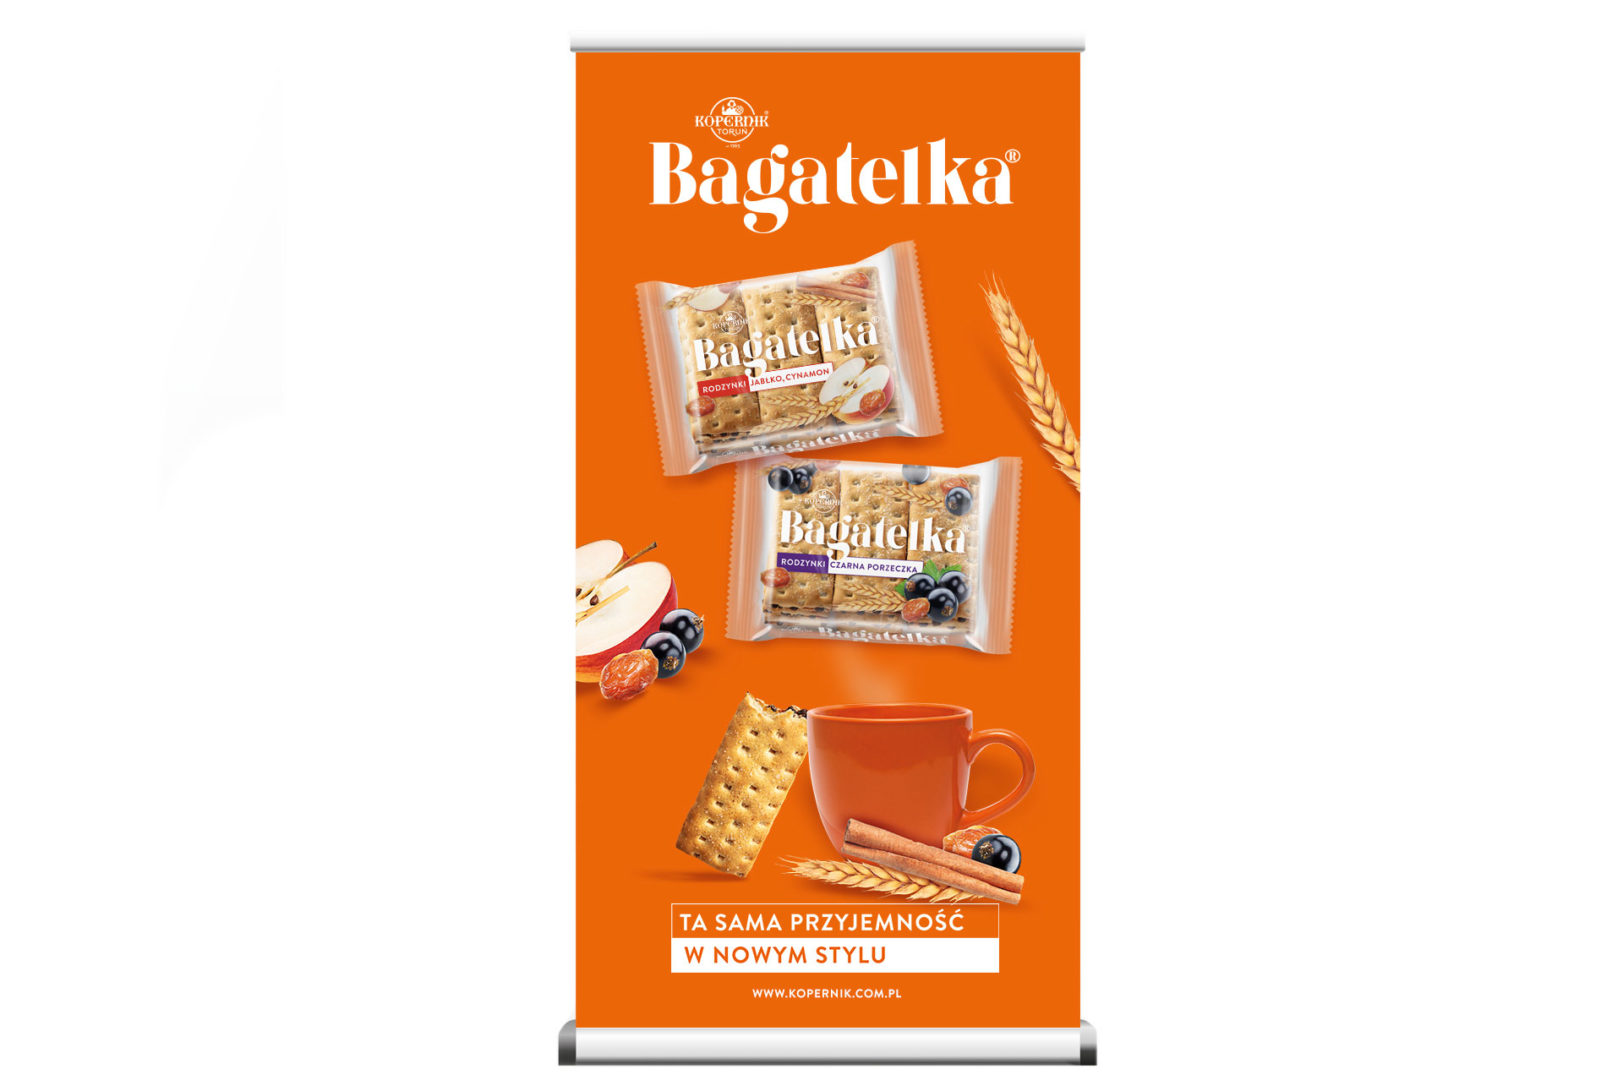 BAGATELKA_projekt_opakowania_branding_packaging_09